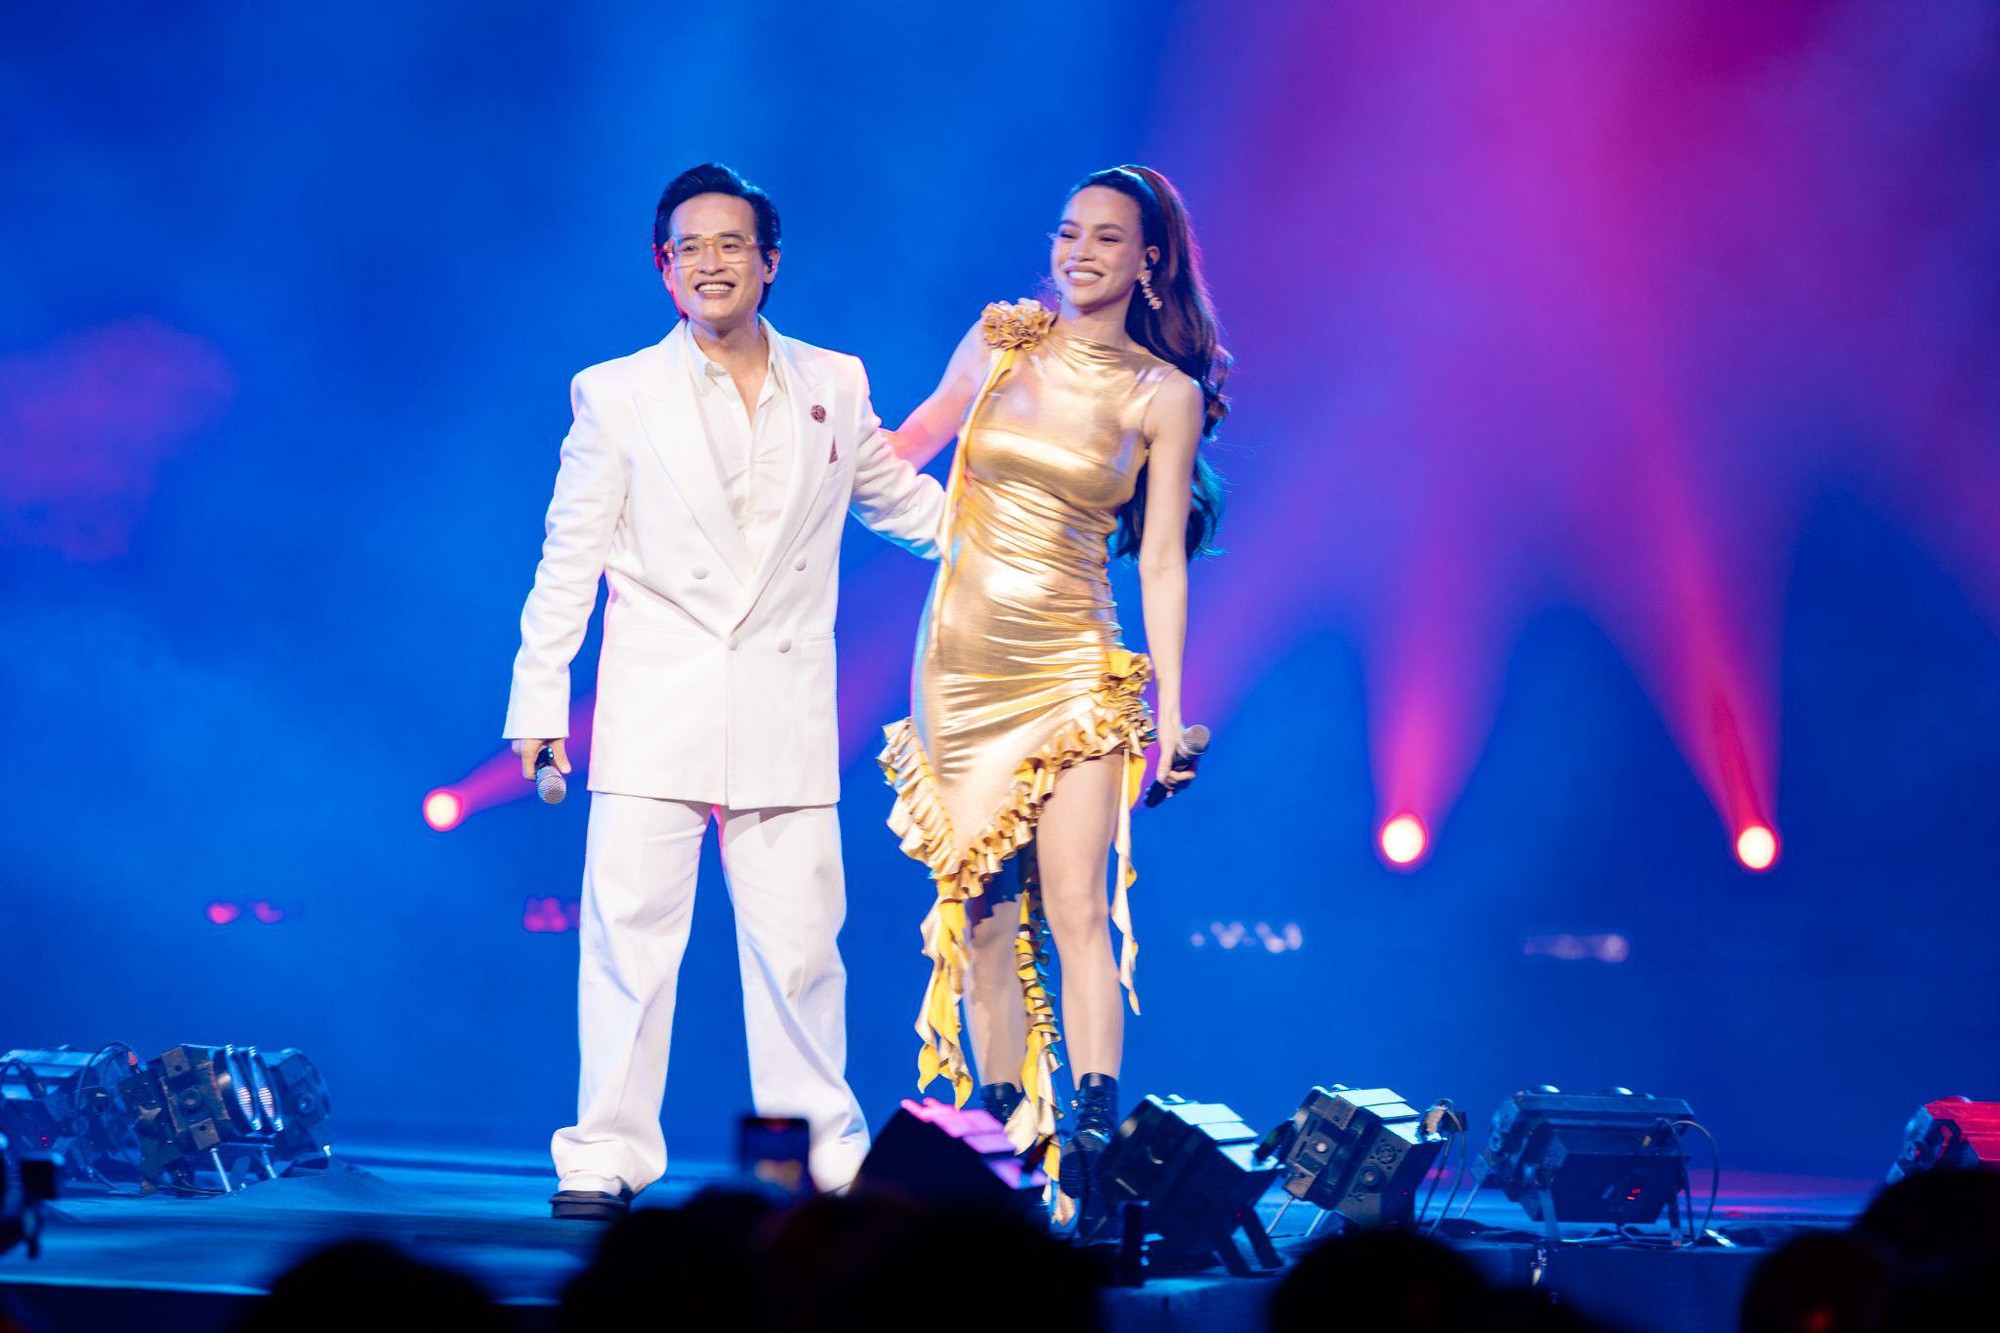 Hà Anh Tuấn và Hồ Ngọc Hà gây xúc động khi song ca loạt hit trong đêm nhạc “Thời Khắc Giao Thời” tại TP.HCM - Ảnh 4.